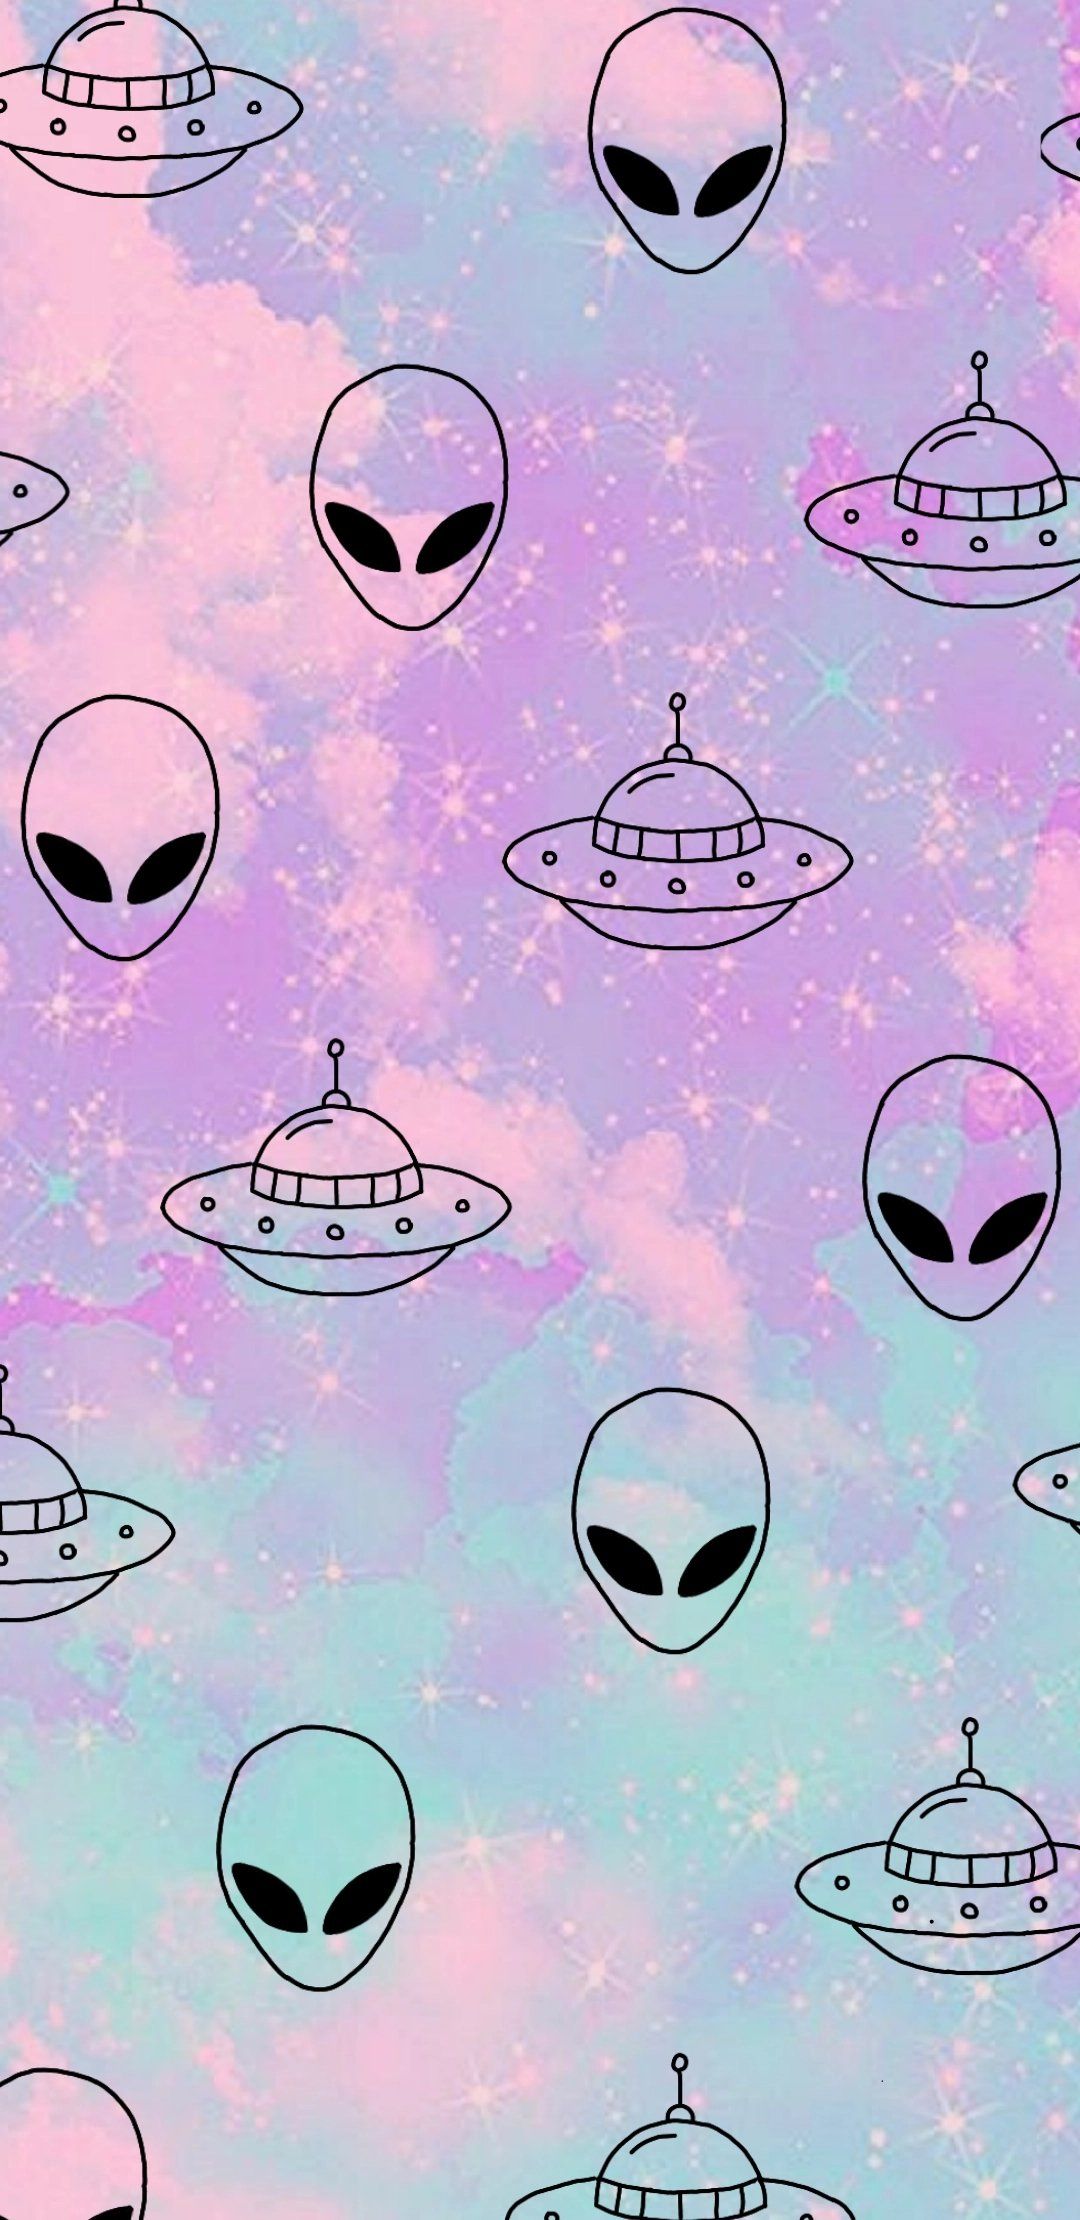 Alien Vaporwave Wallpaper! #wallpaper #vaporwave # alien #aesthetic